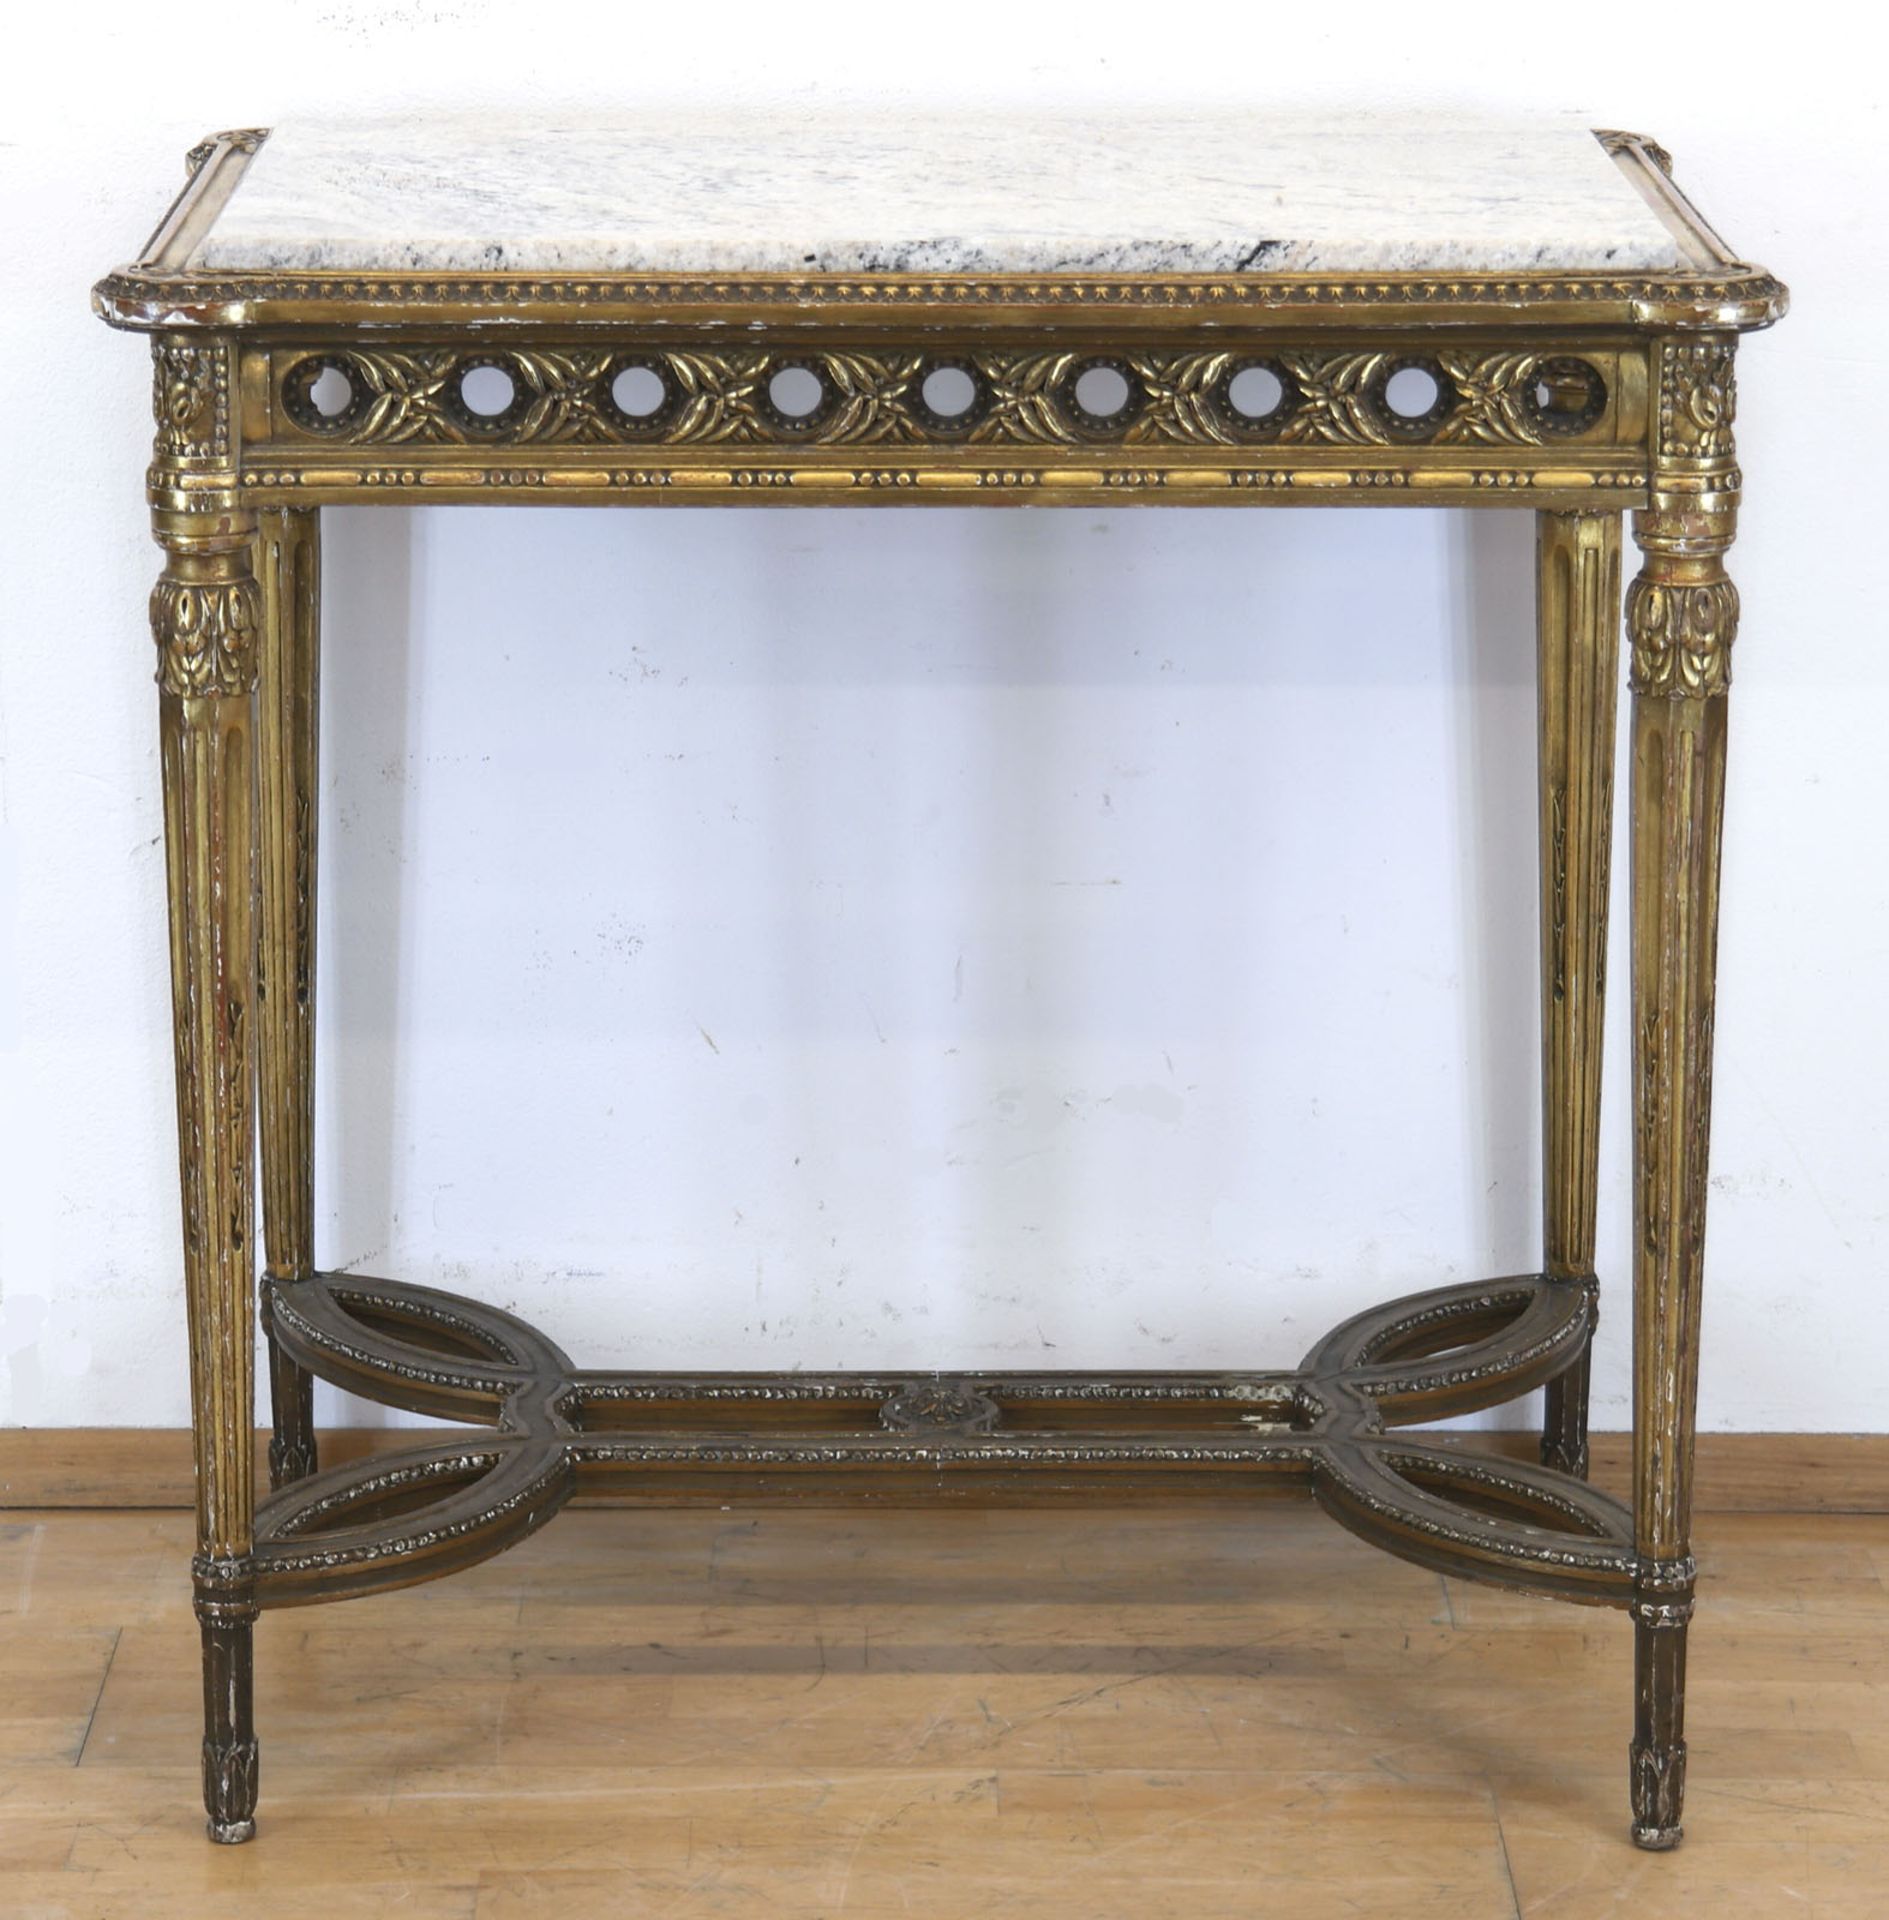 Tisch im Louis-Quinze-Stil, Frankreich um 1880, Holz mit Stuckverzierungen, gold gefaßt, über kanne - Bild 2 aus 2